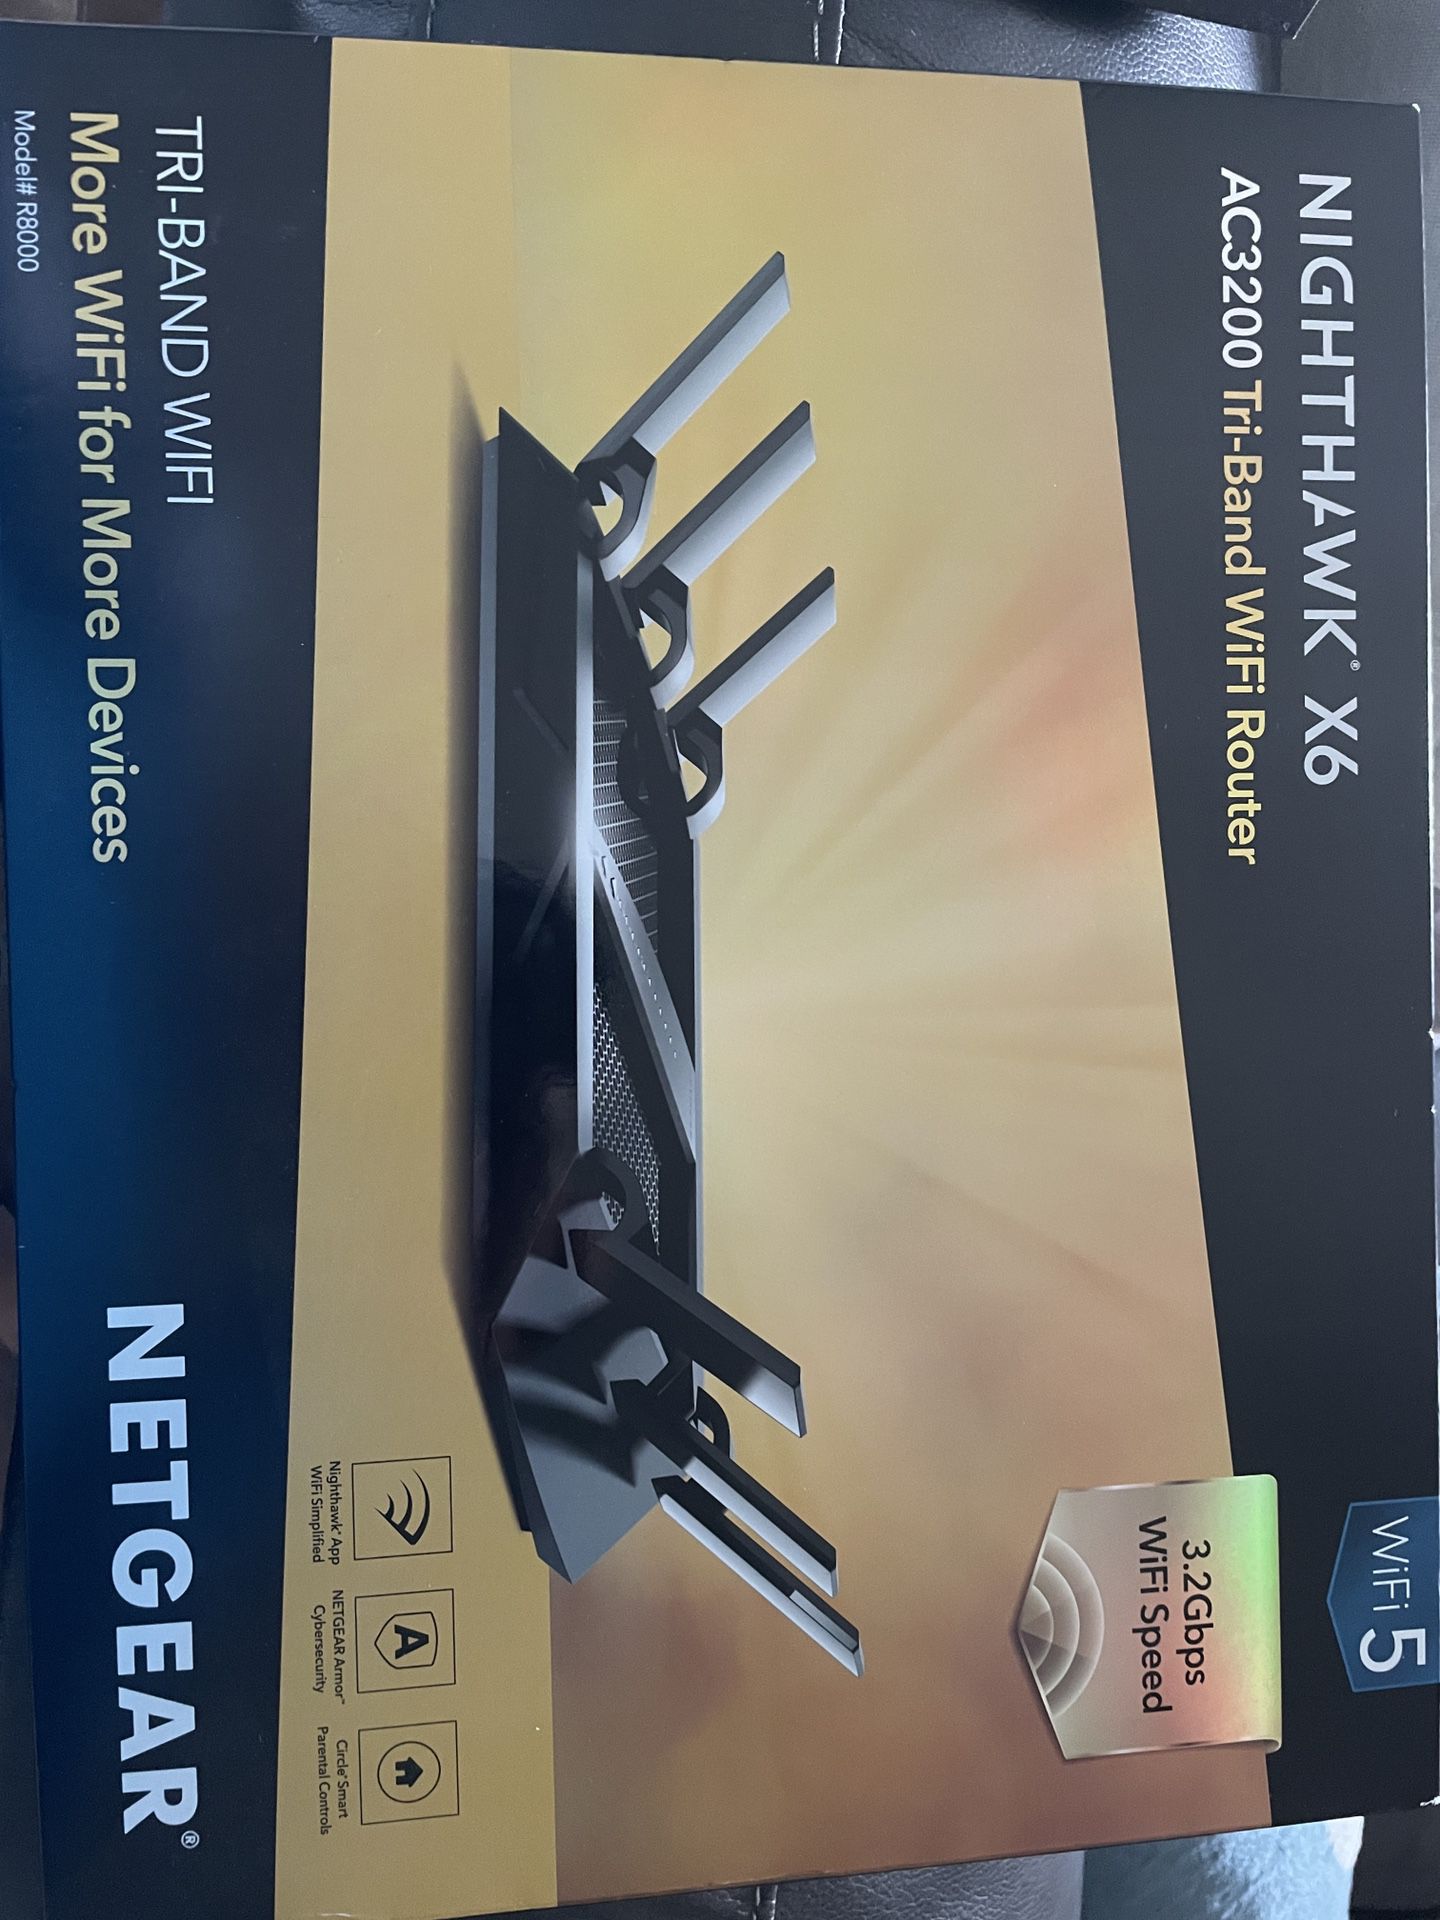 NETGEAR - Nighthawk R800 AC3200 Tri-Band WiFi Router